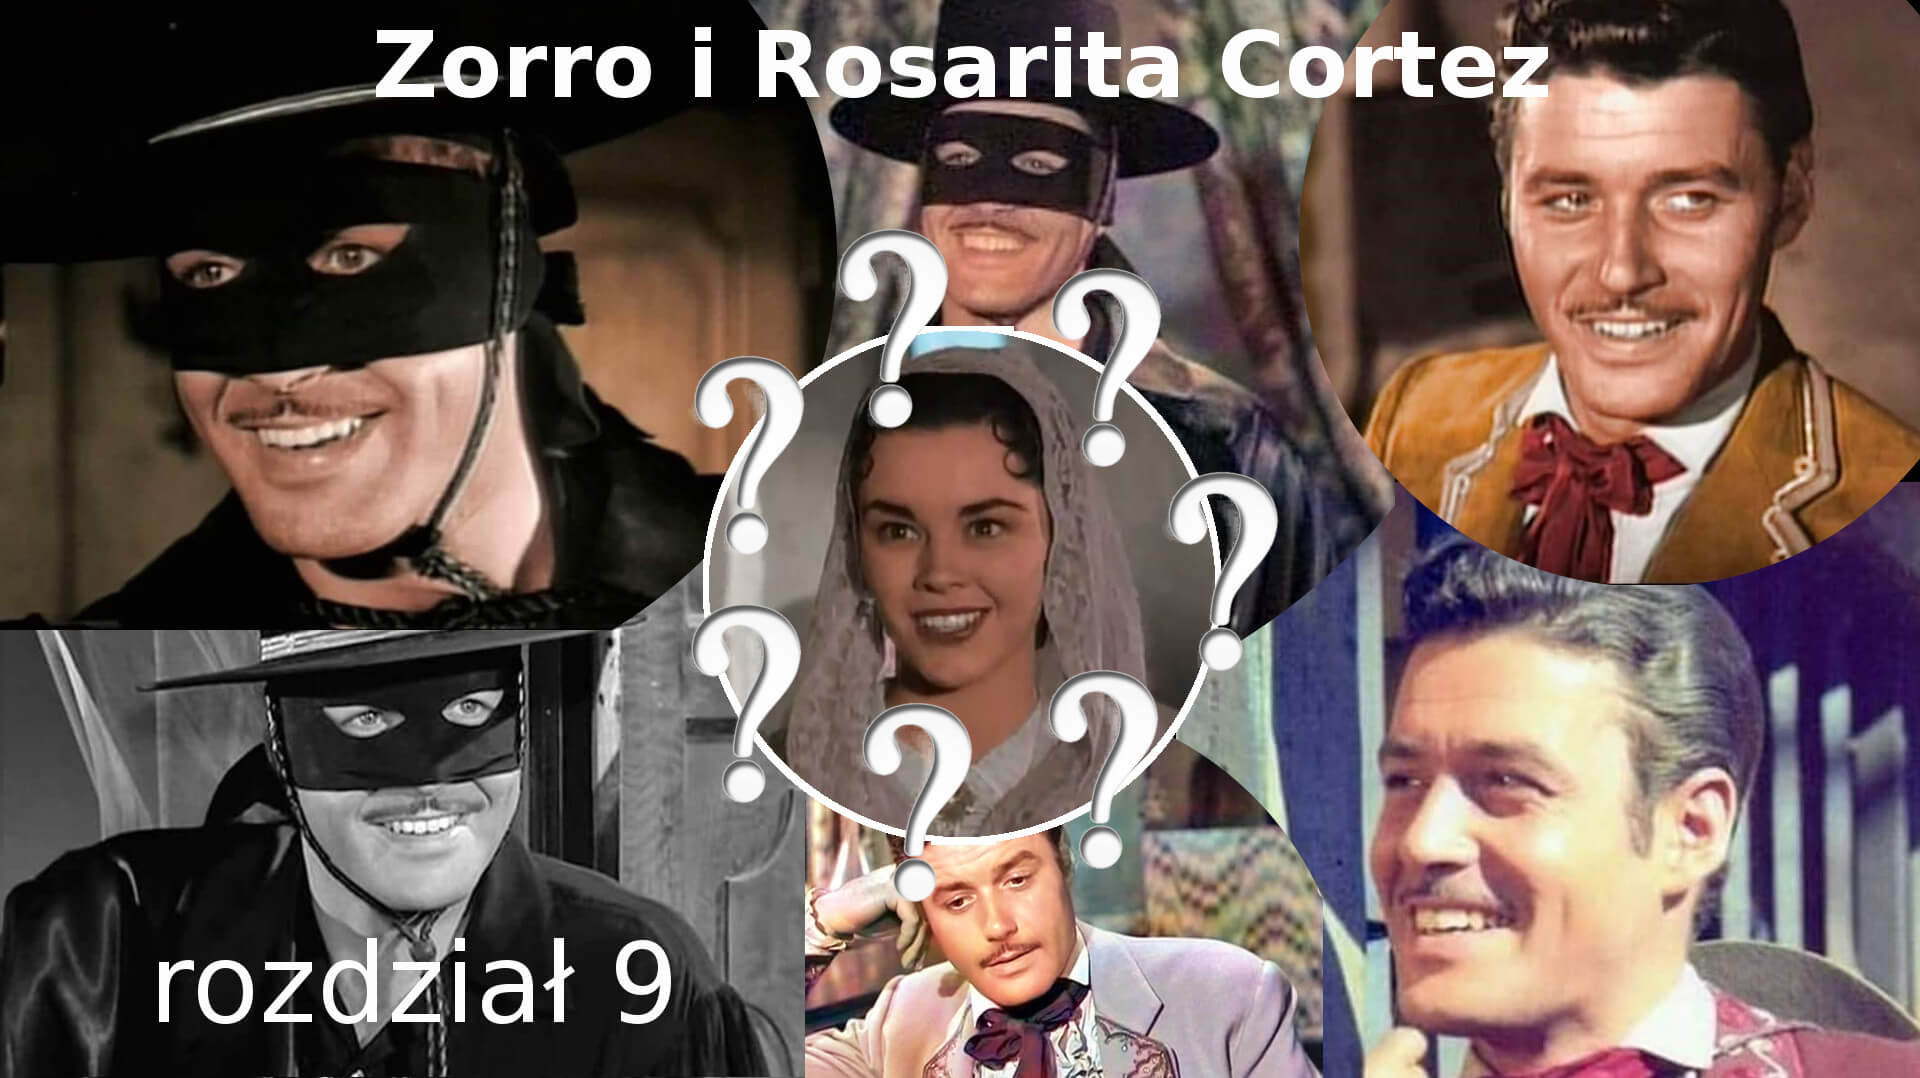 Zorro i Rosarita Cortez rozdział 9 Zorro fanfiction